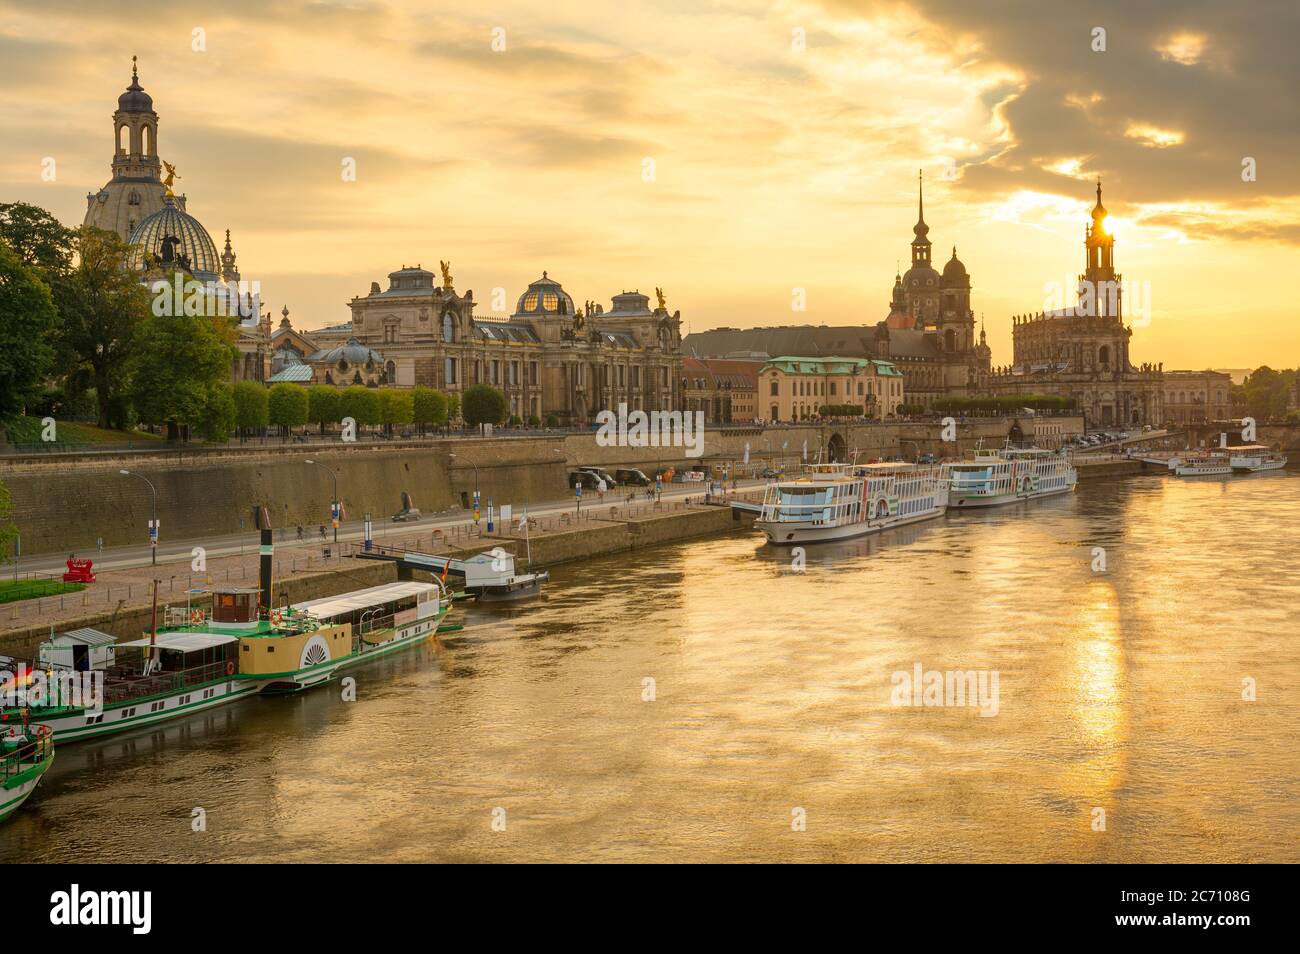 Dresde, Allemagne paysage urbain au-dessus de l'Elbe au coucher du soleil. Banque D'Images